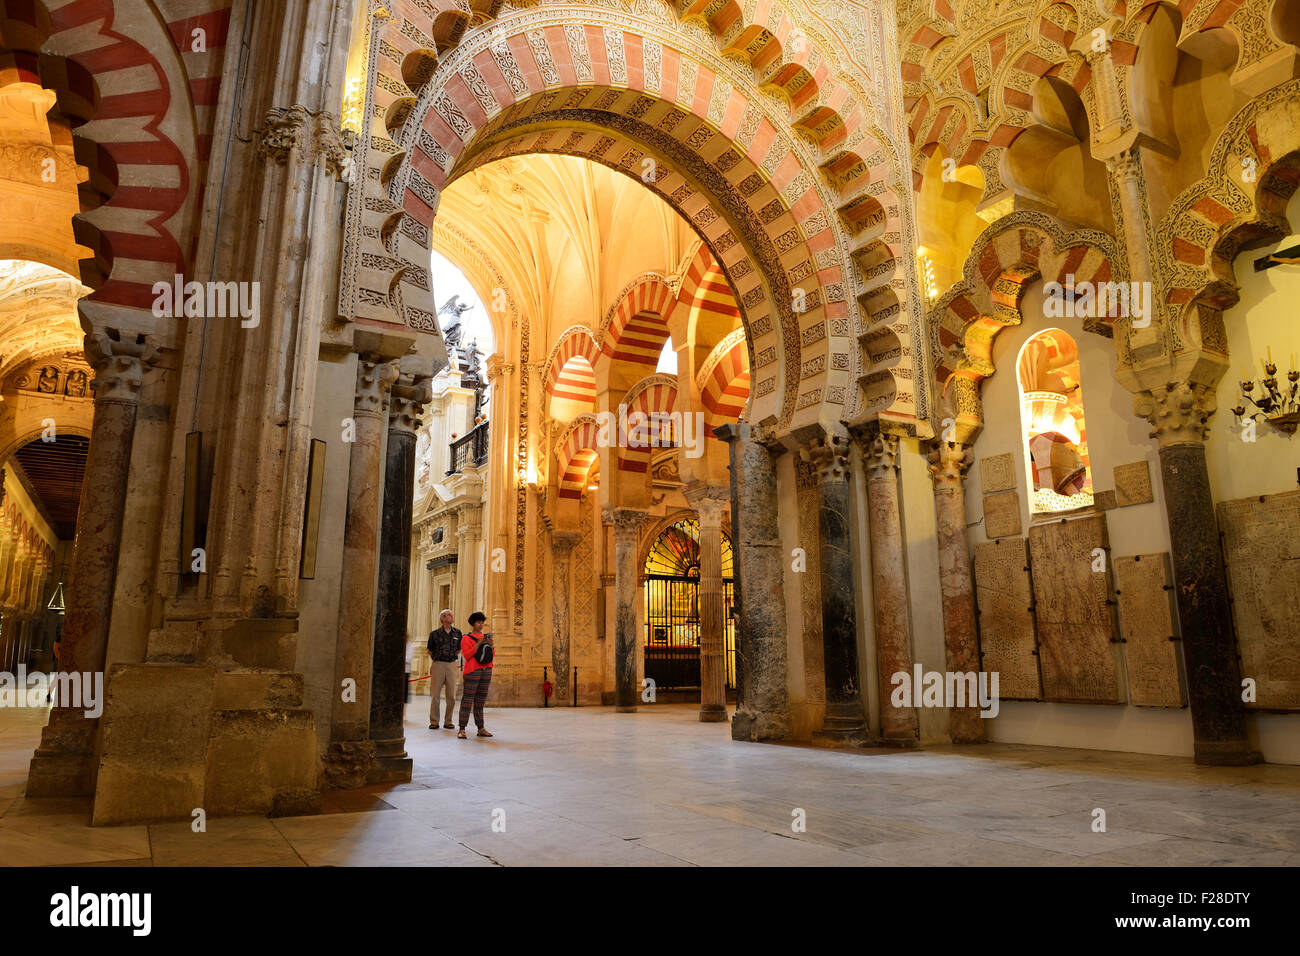 Intérieur de la cathédrale Mezquita catedral (mosquée) à Cordoba, Andalousie, Espagne Banque D'Images